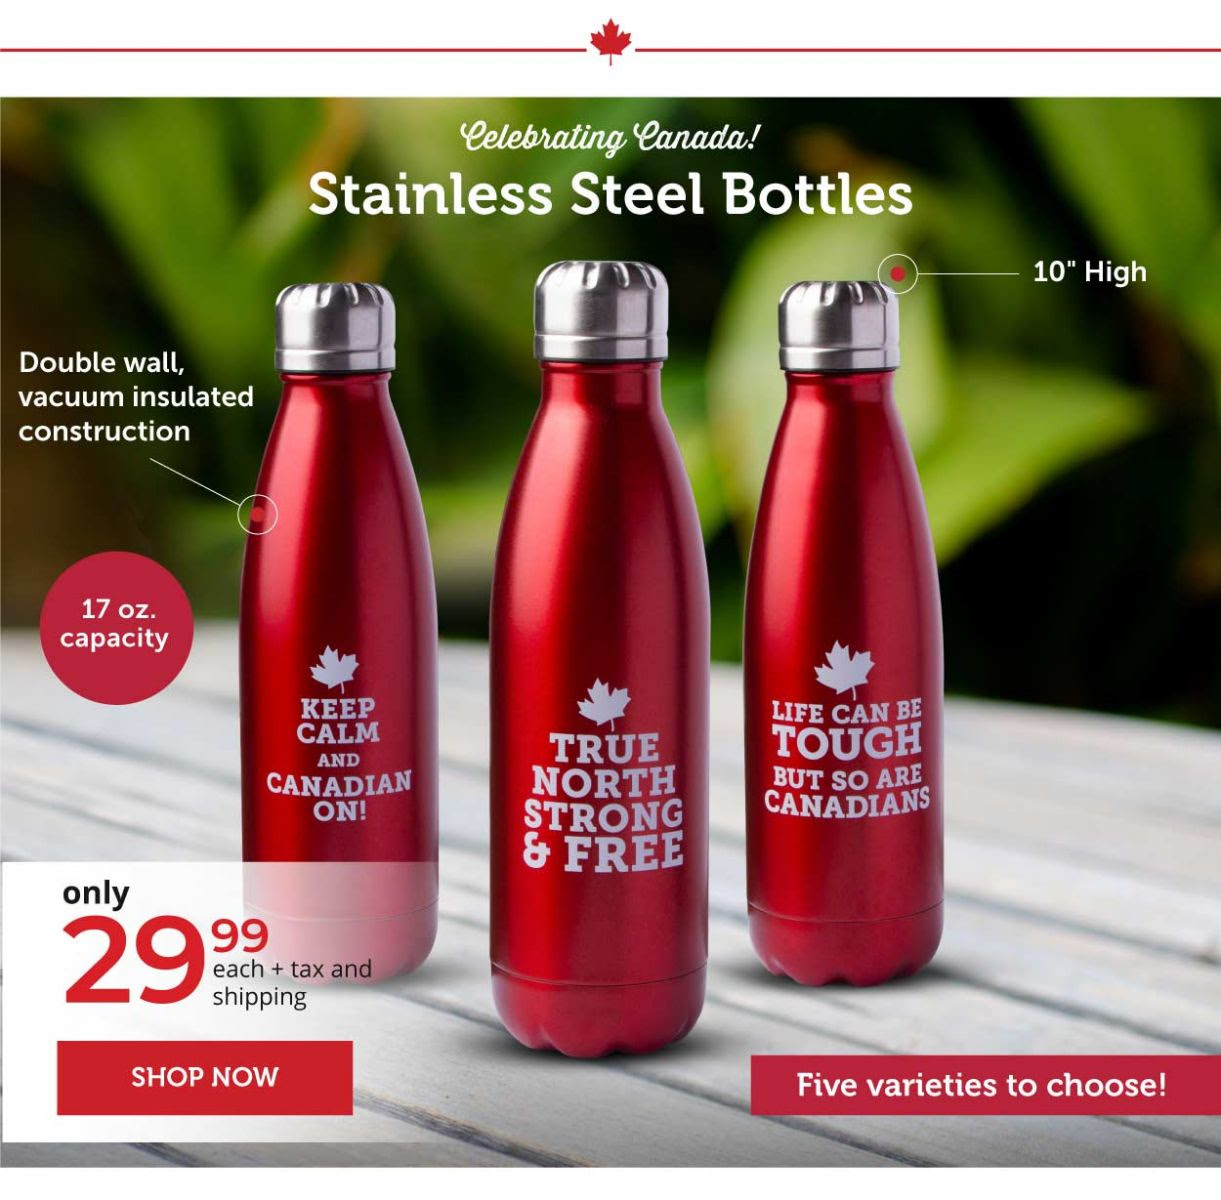 Stainless Steel Bottles